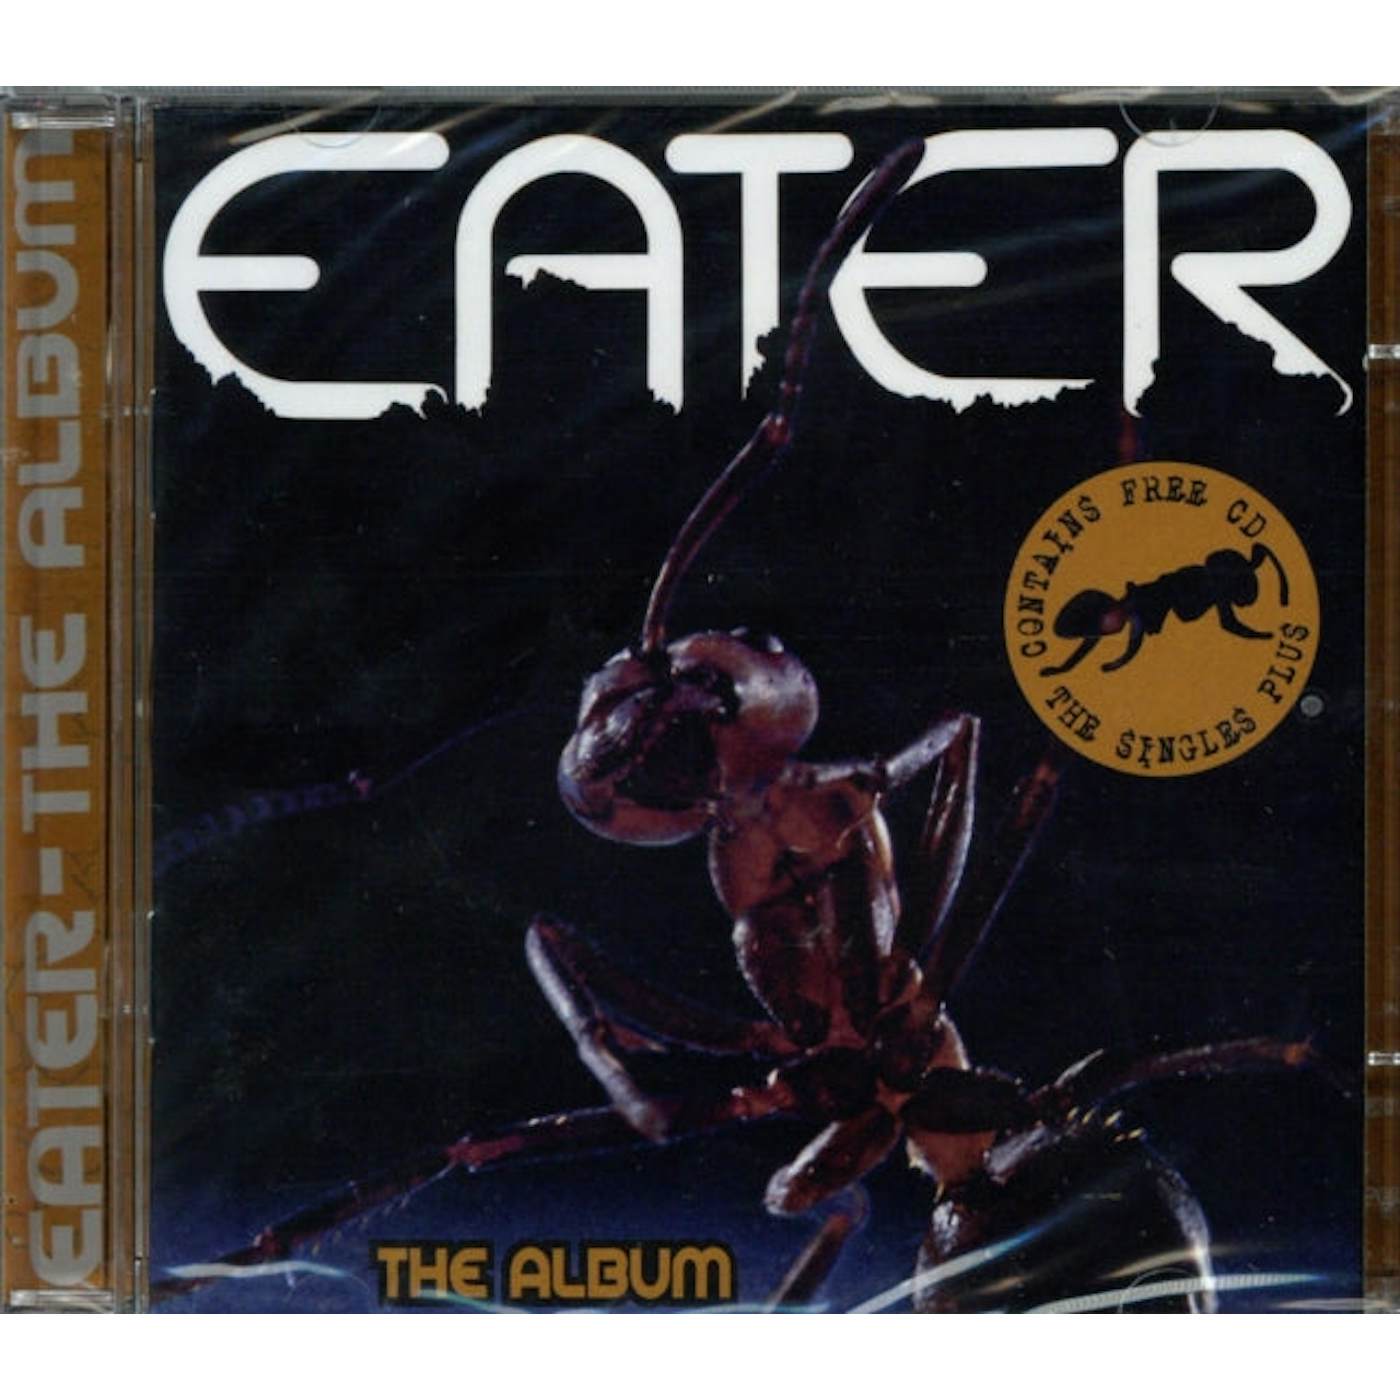 Eater CD - The Album